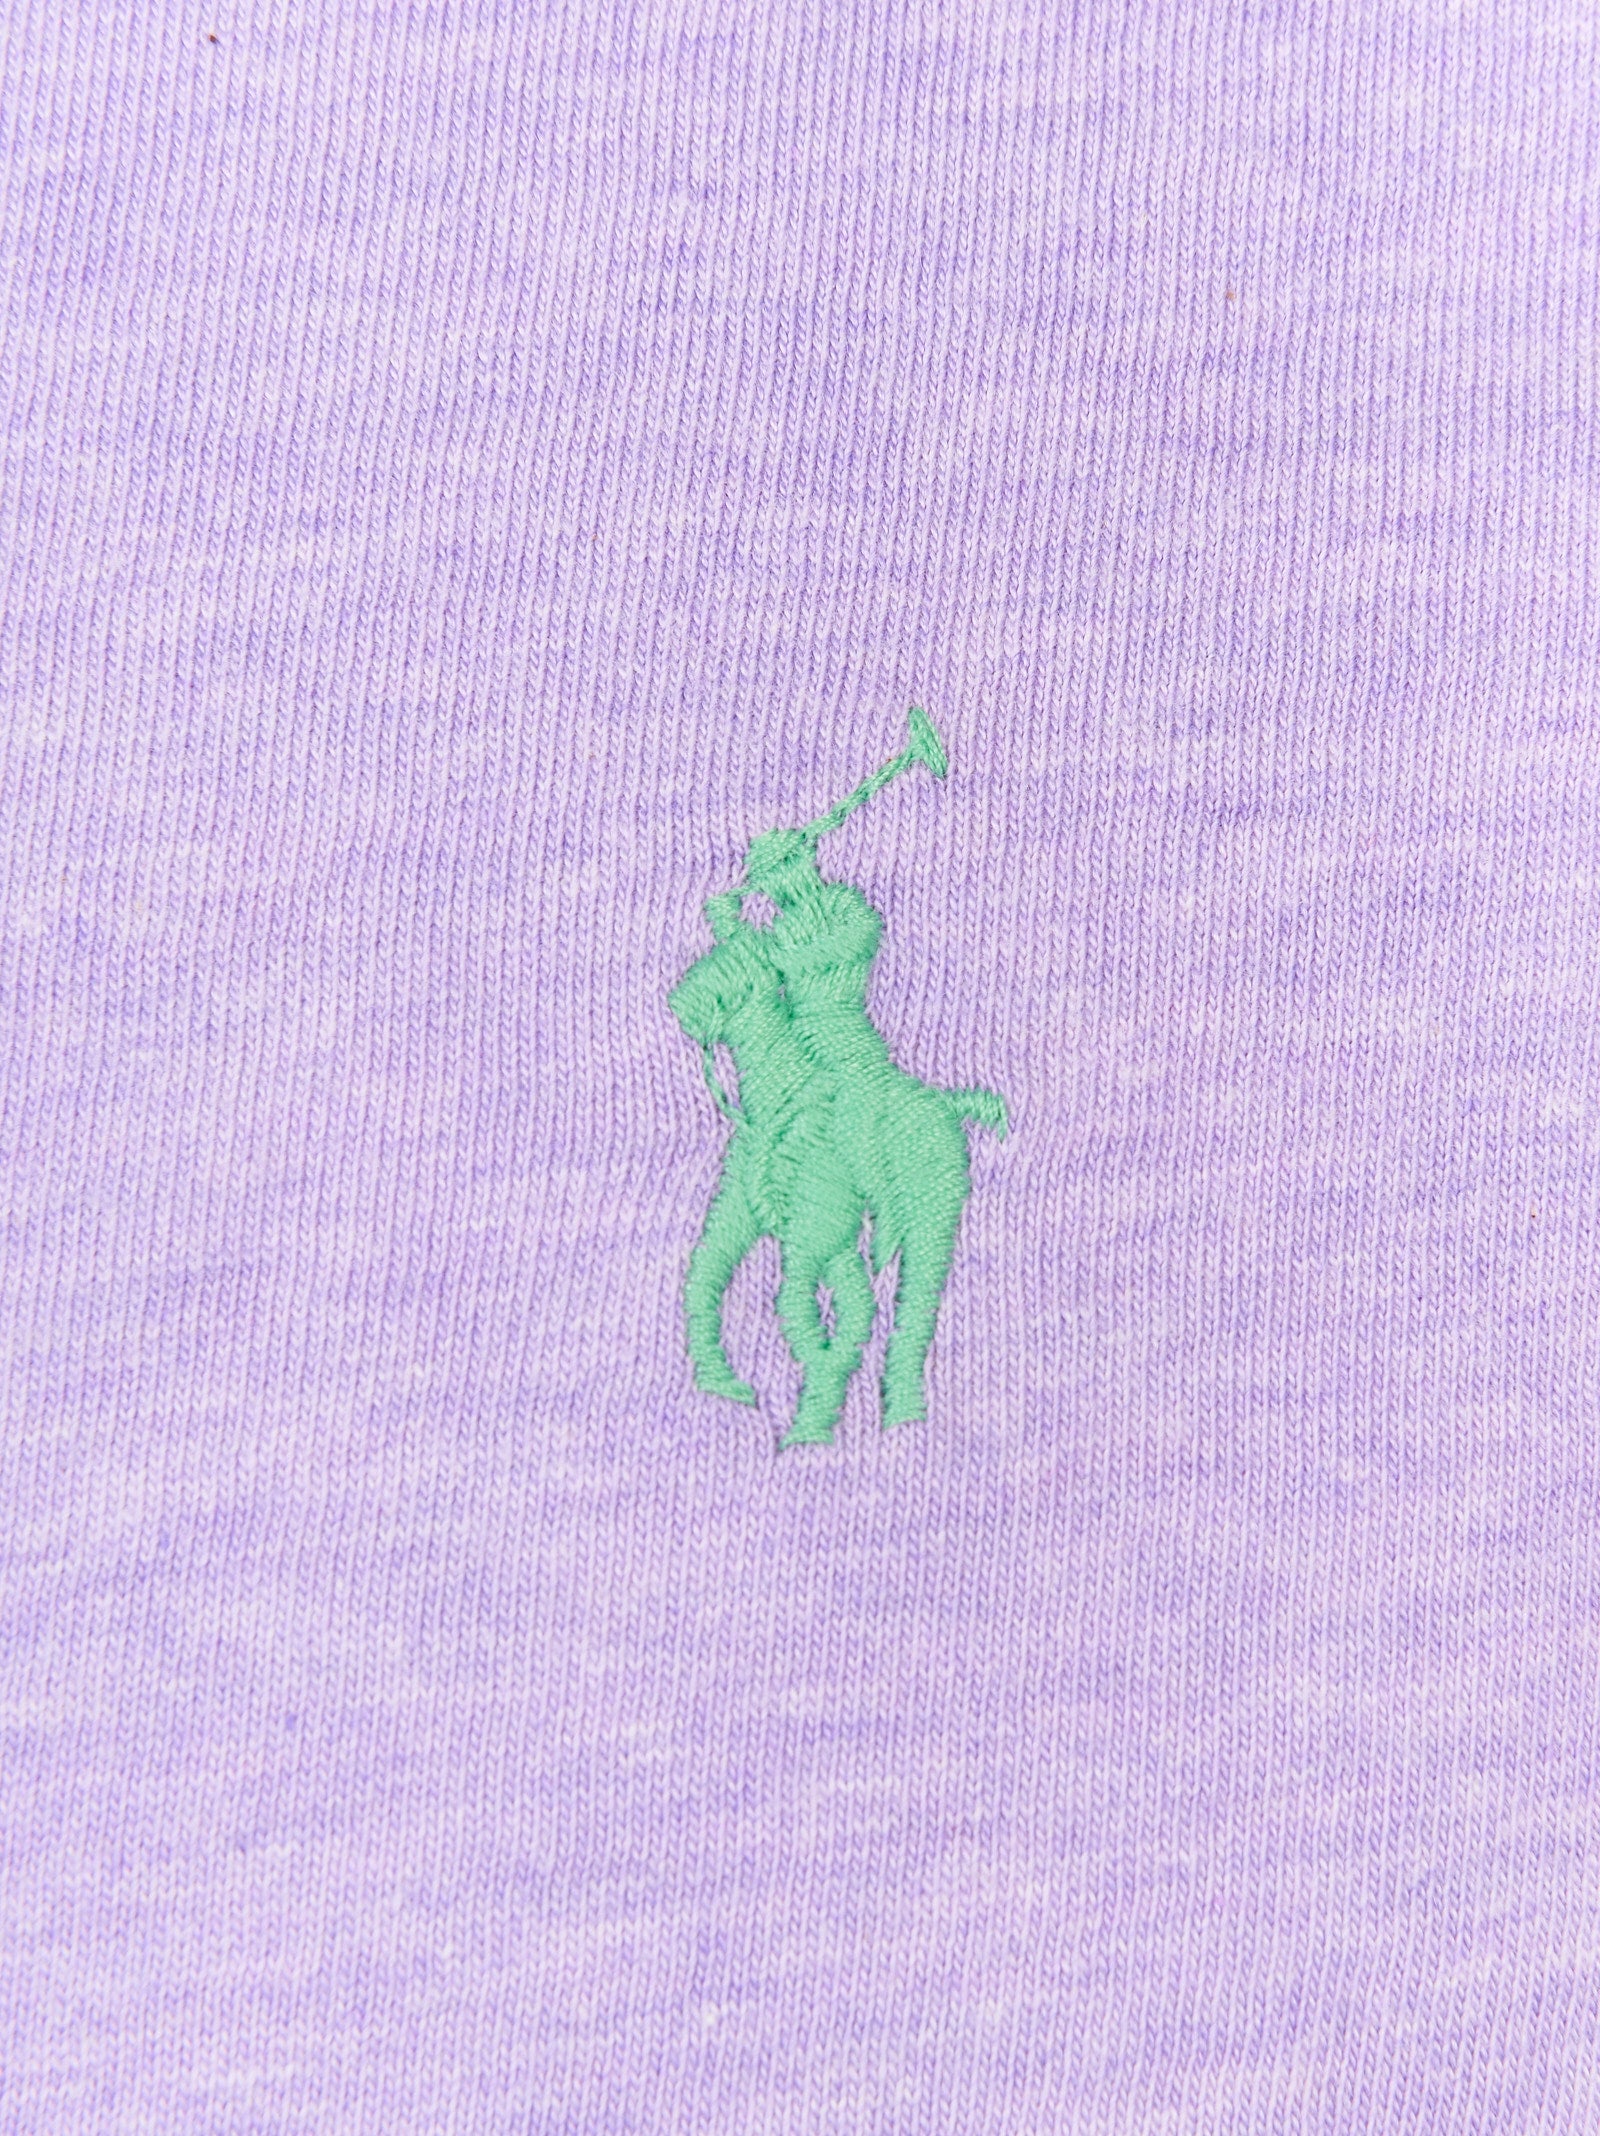 T-shirt POLO RALPH LAUREN
Pastel purple